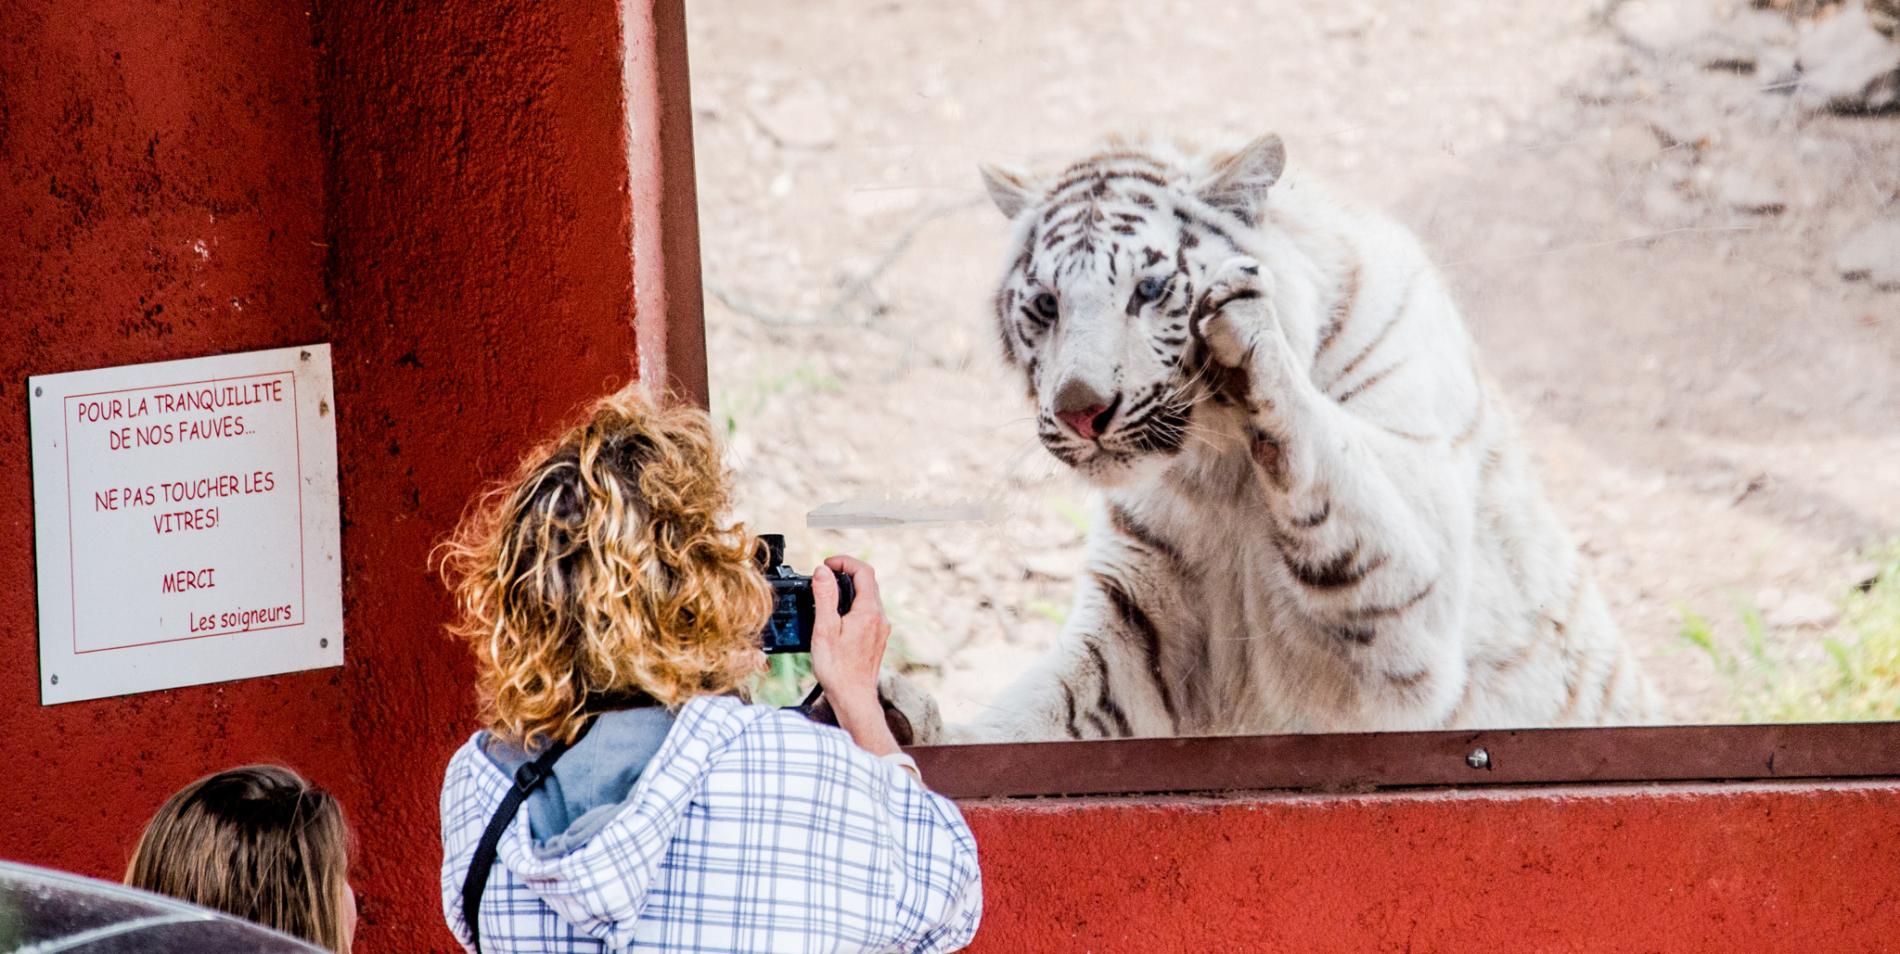 05-dangerous-animal-selfies-zoos_fraus_jmcarthur_2016-8635.adapt.1900.1.jpg